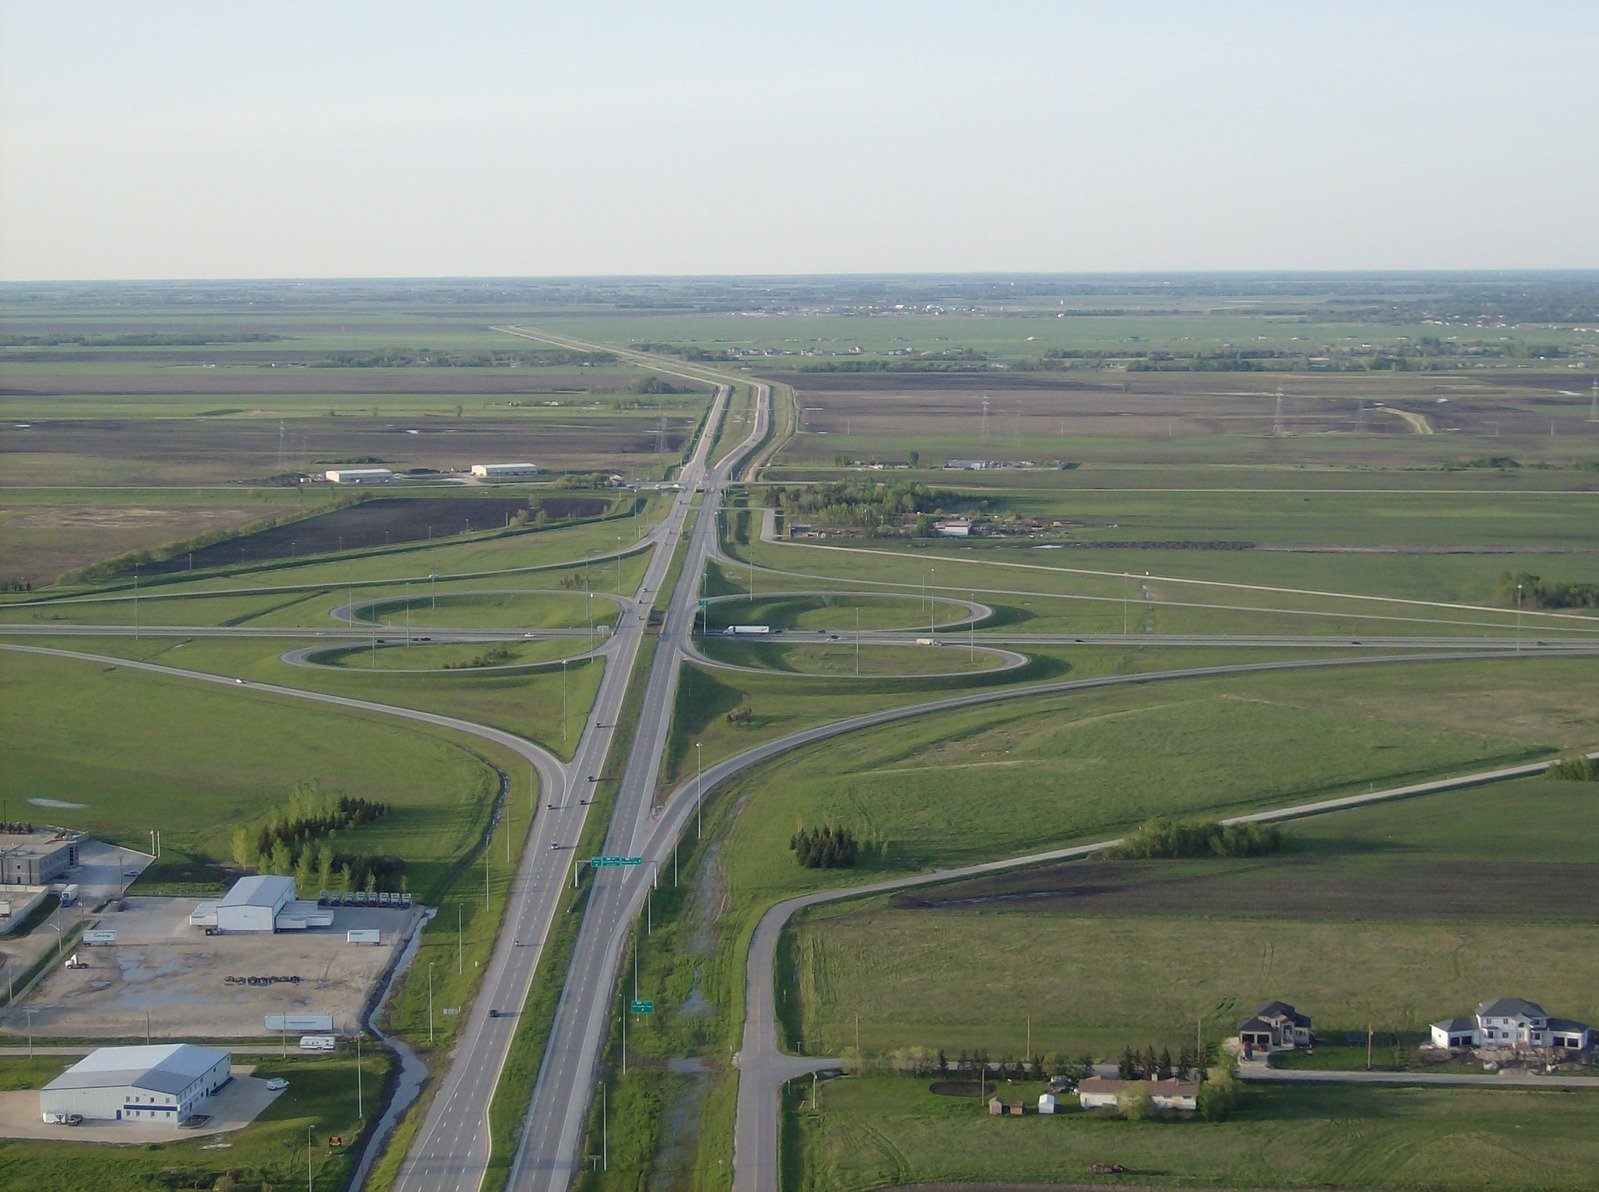 an aerial view of multiple roads through an open prairie